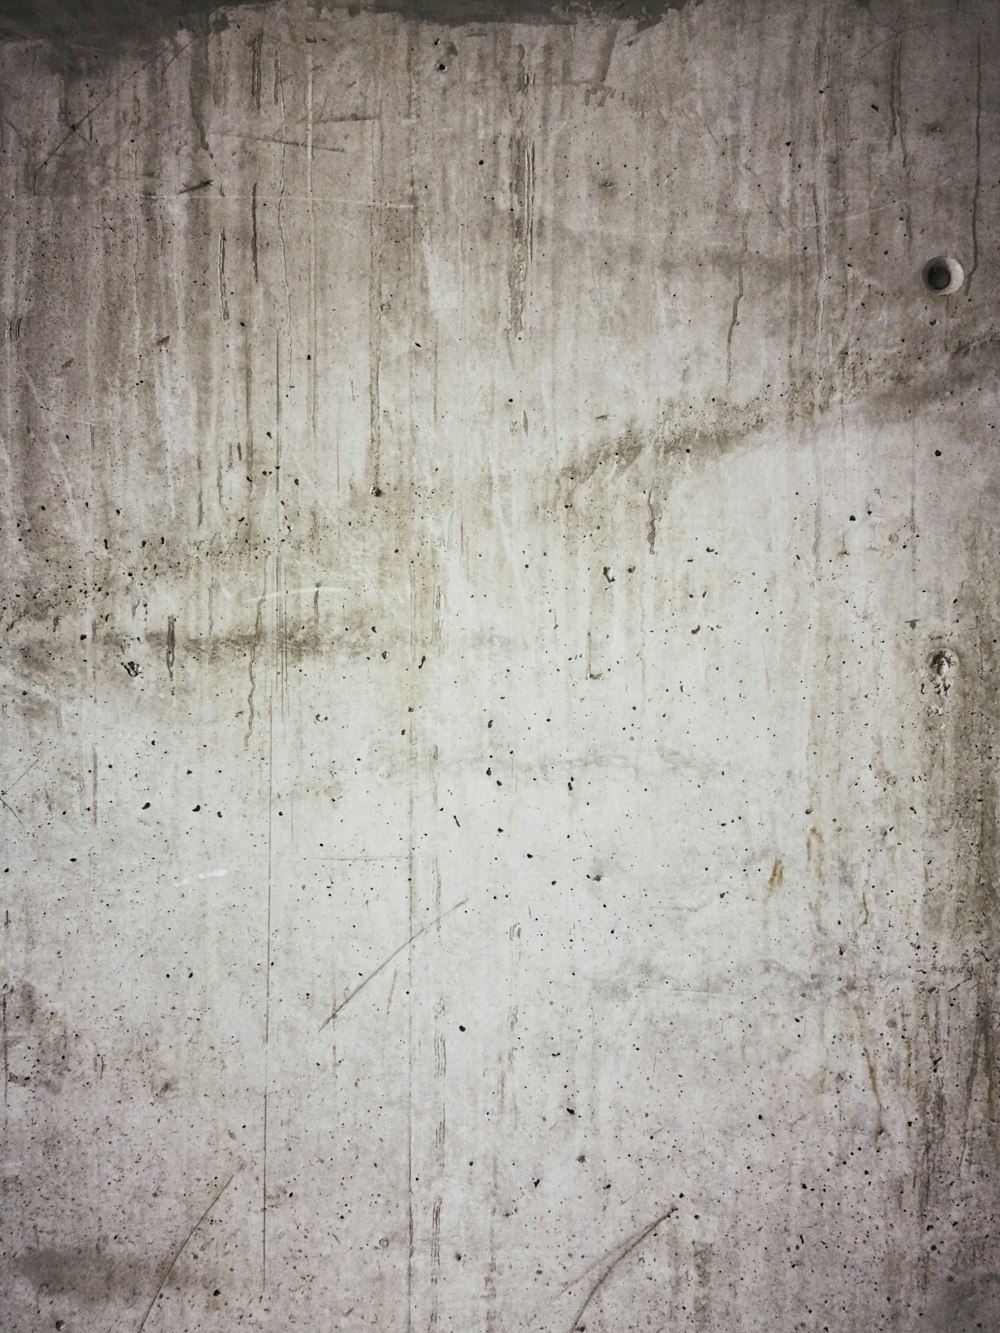 Eine weiße Wand mit einigen schwarzen Punkten darauf